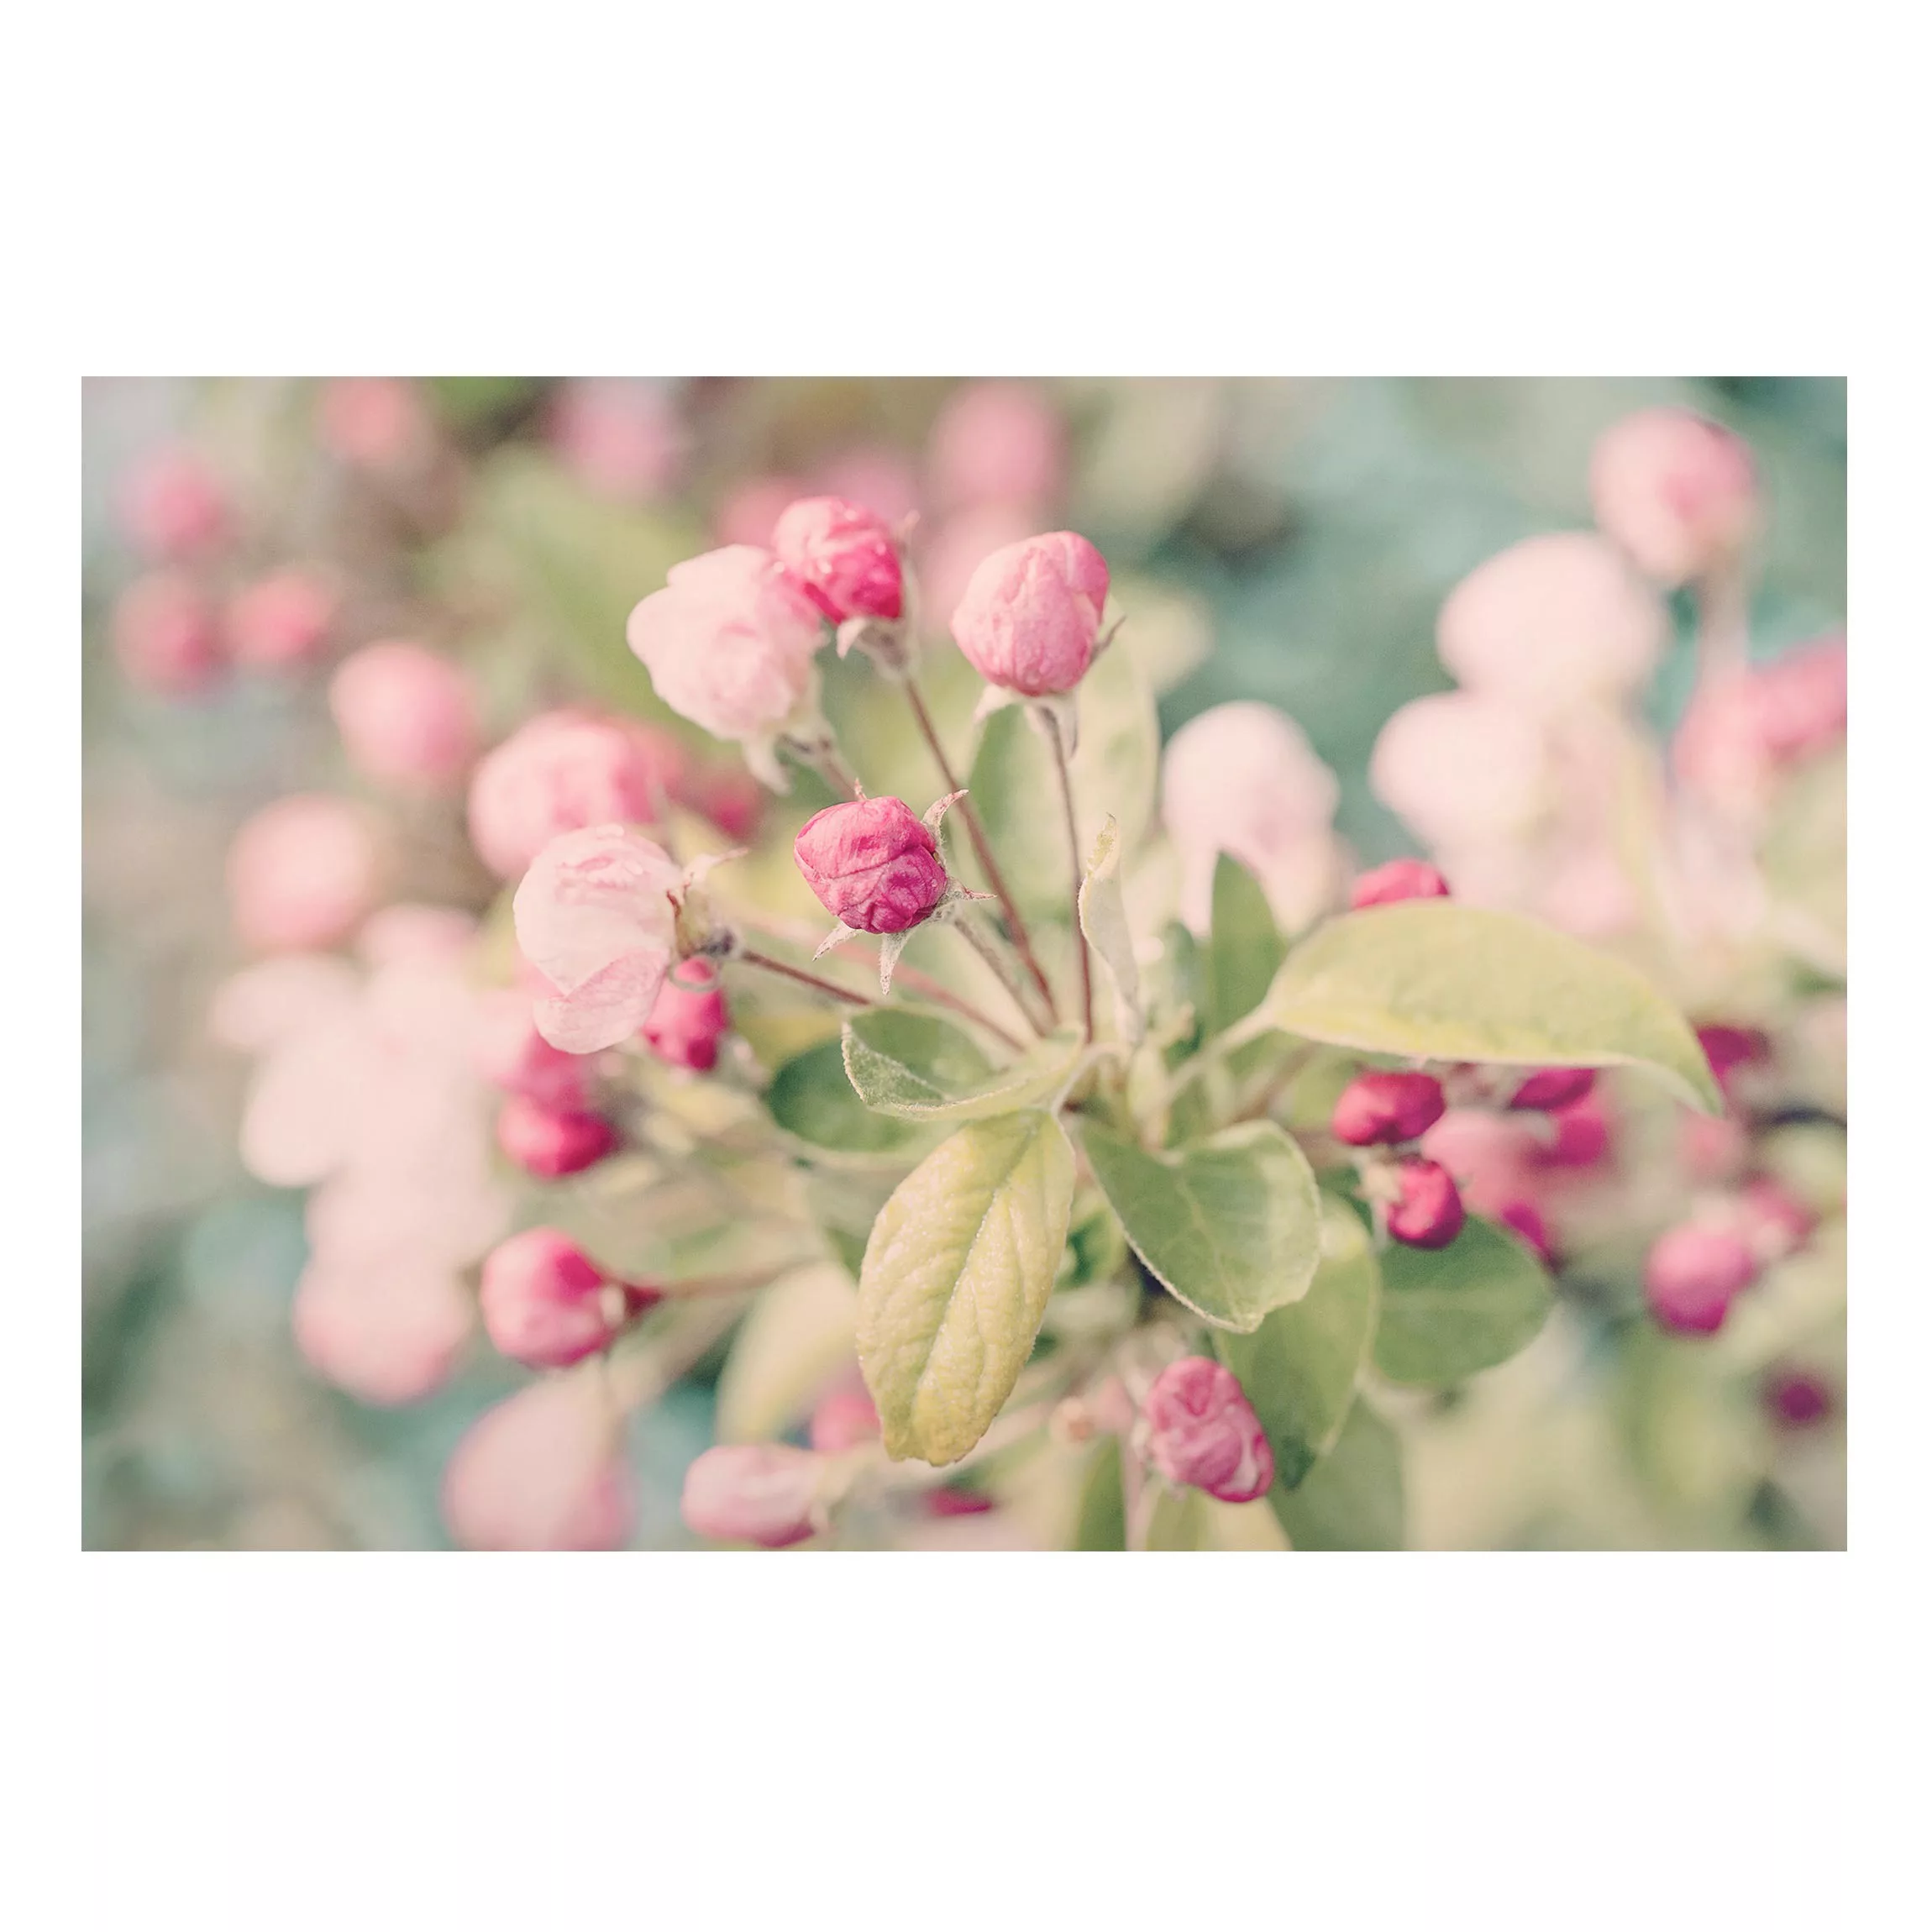 Magnettafel Apfelblüte Bokeh rosa günstig online kaufen